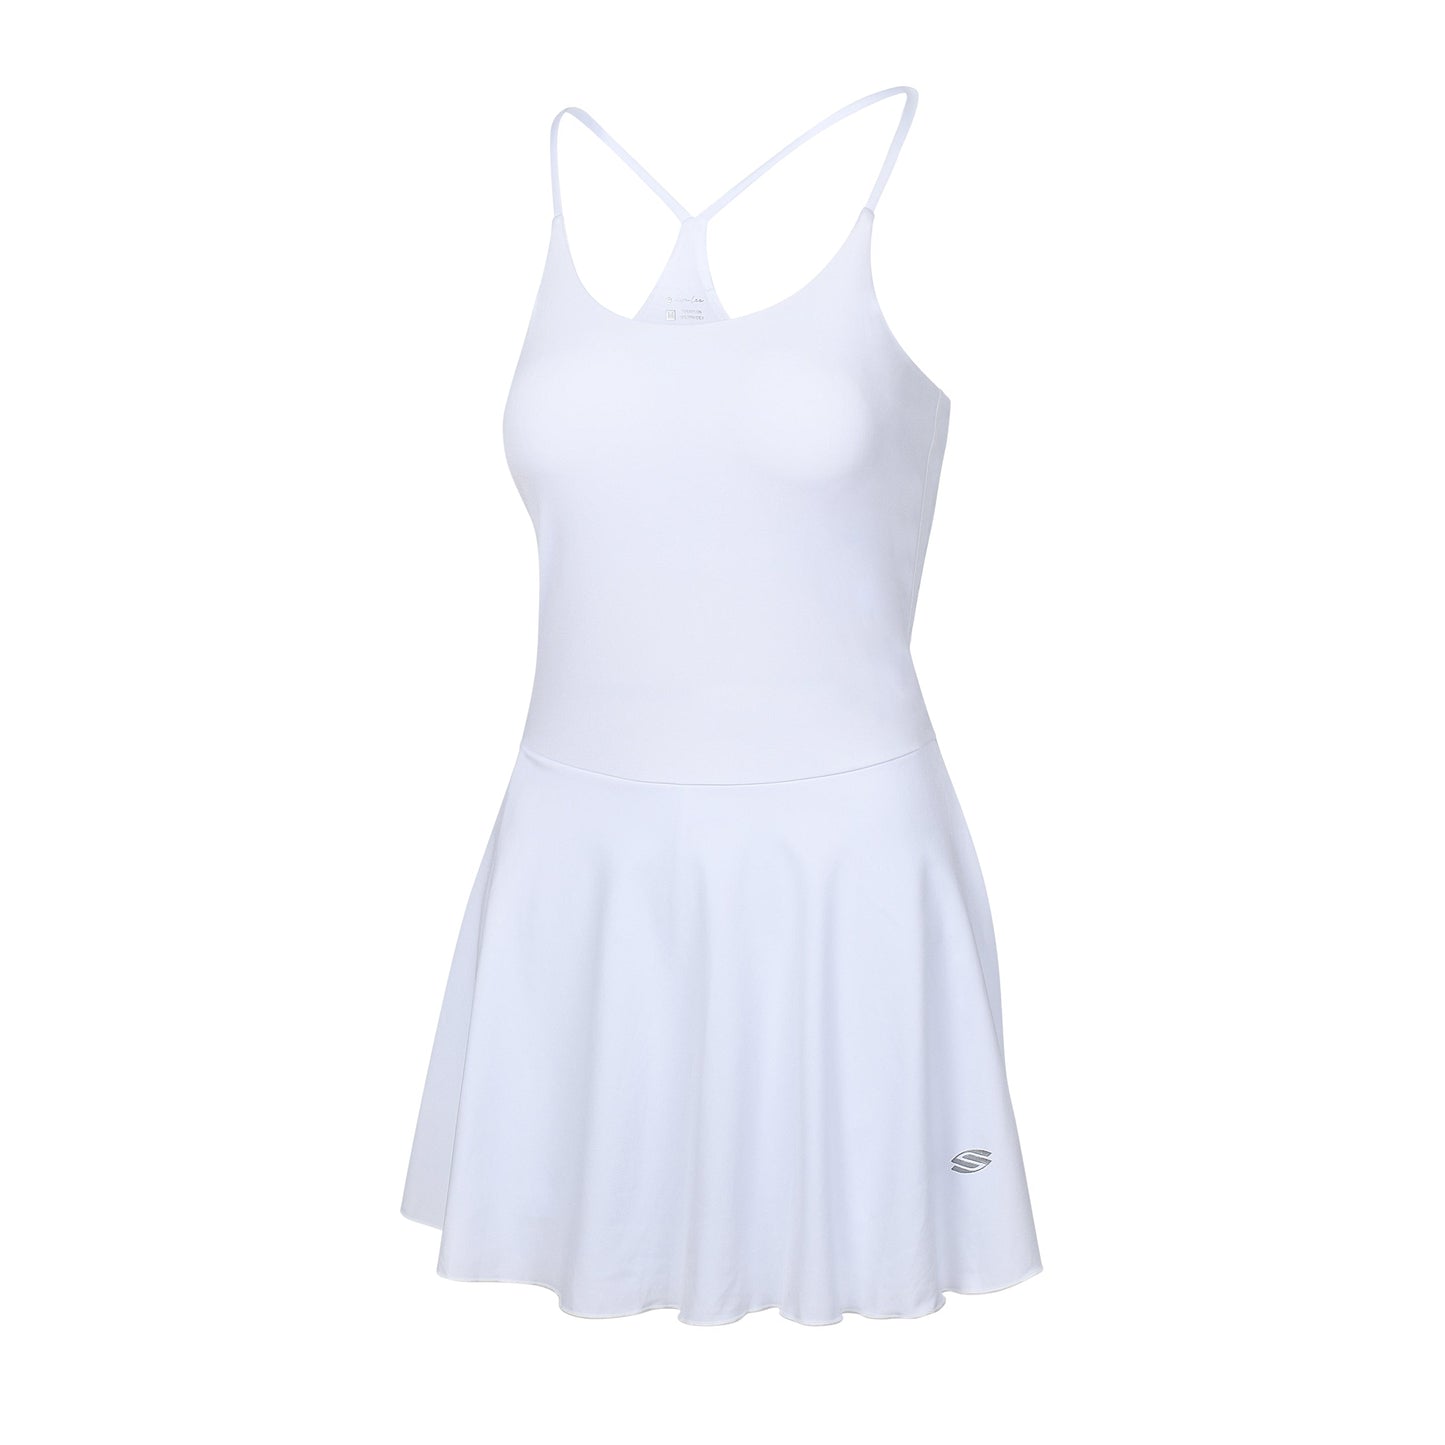 AvaLee by Selkirk Women's Single-Strap Court Dress by Selkirk Sport